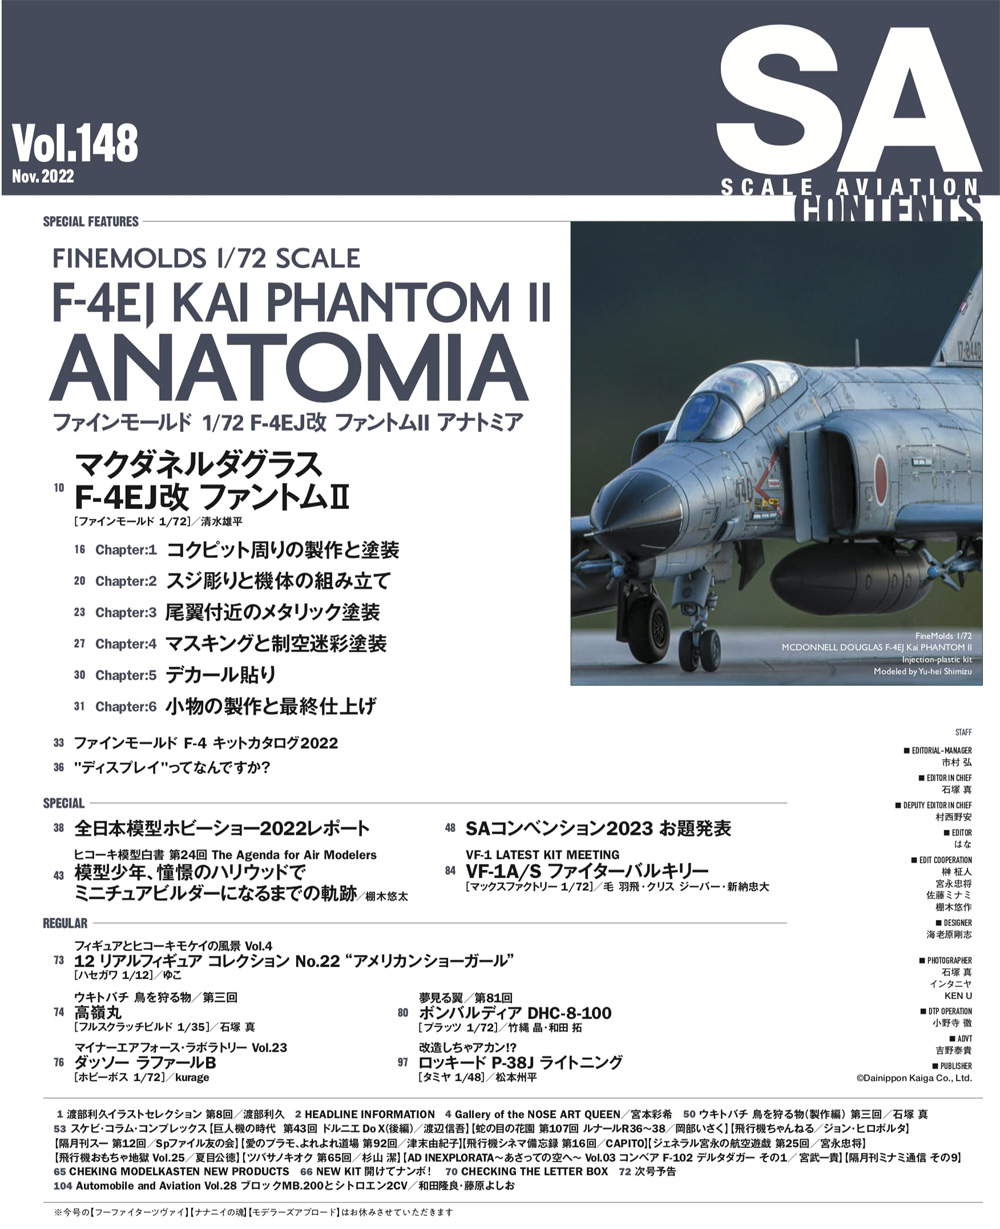 スケール アヴィエーション 2022年11月号 Vol.148 雑誌 (大日本絵画 Scale Aviation No.Vol.148) 商品画像_1